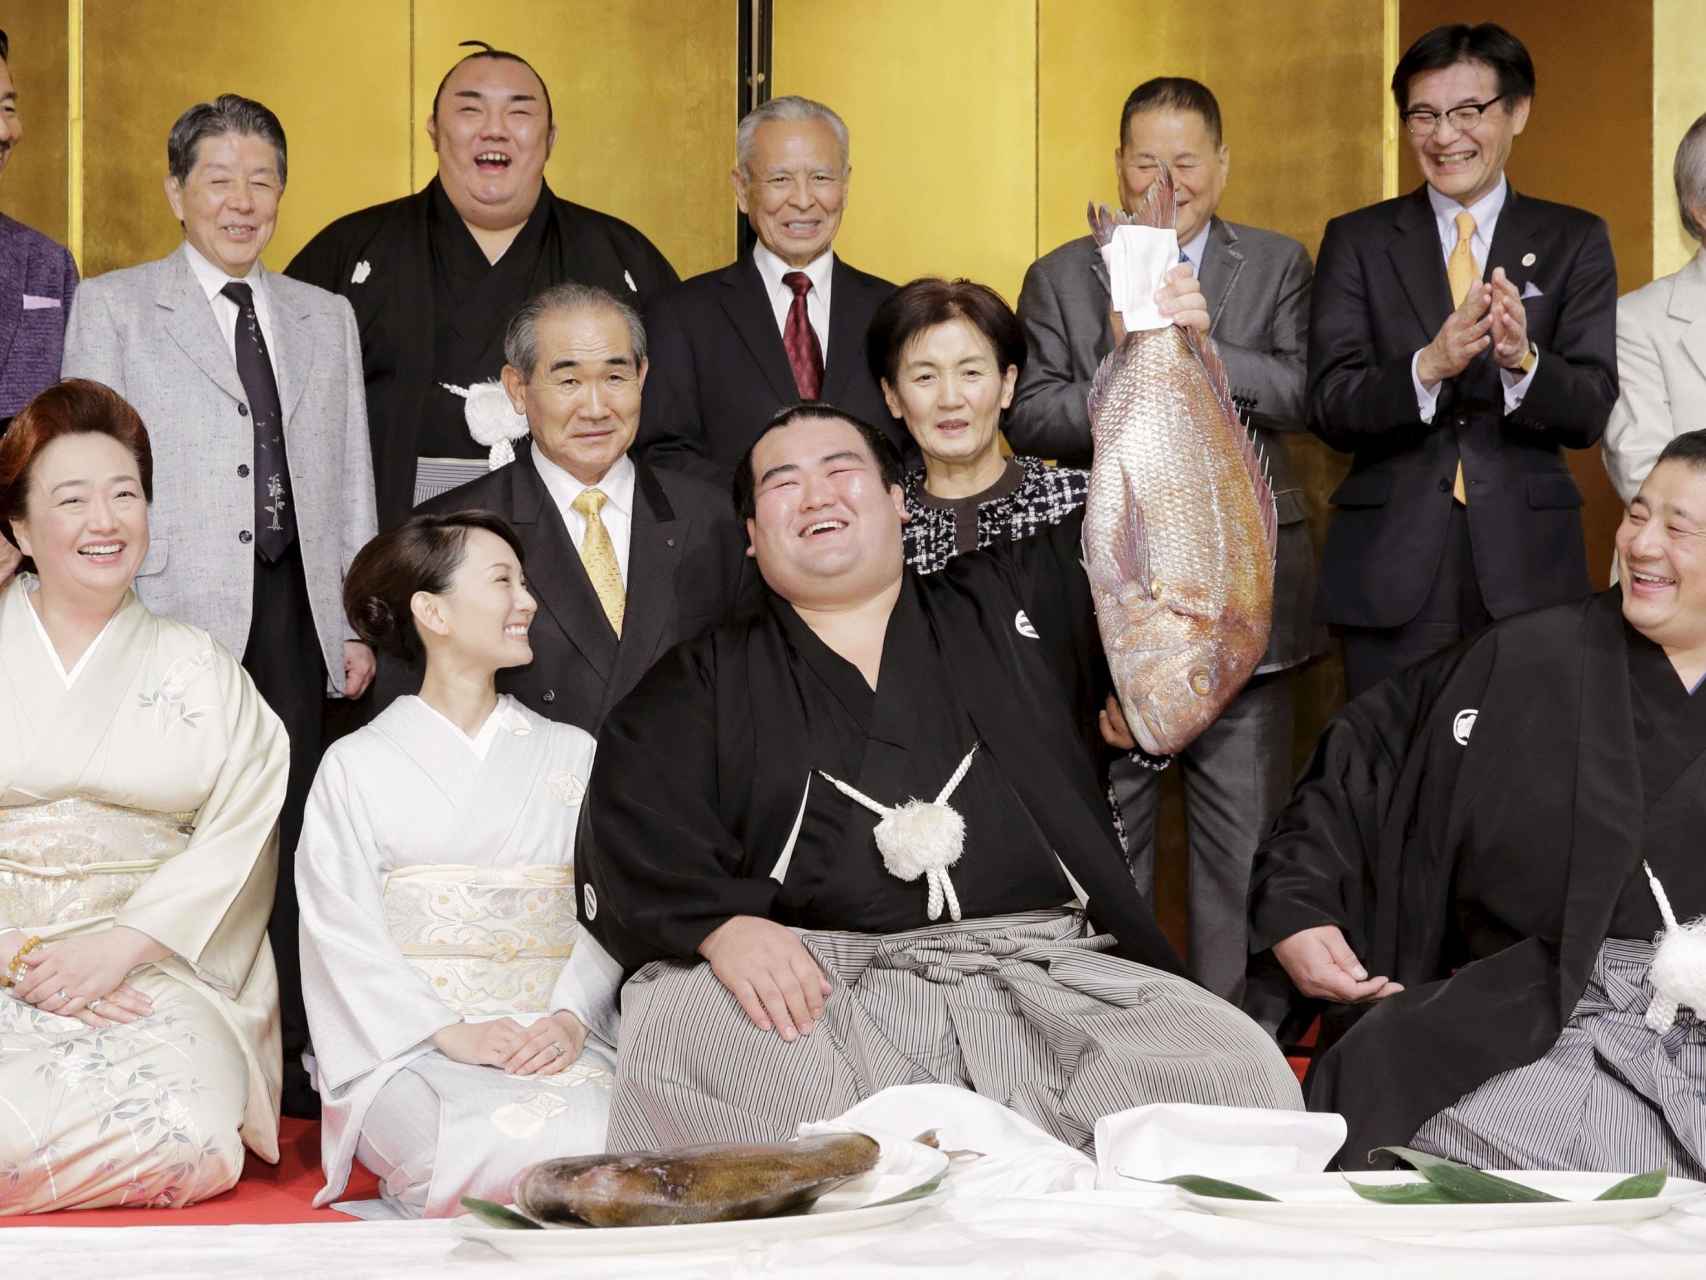 El nuevo emperador japonés del sumo, Kotoshogiku, celebra su título.